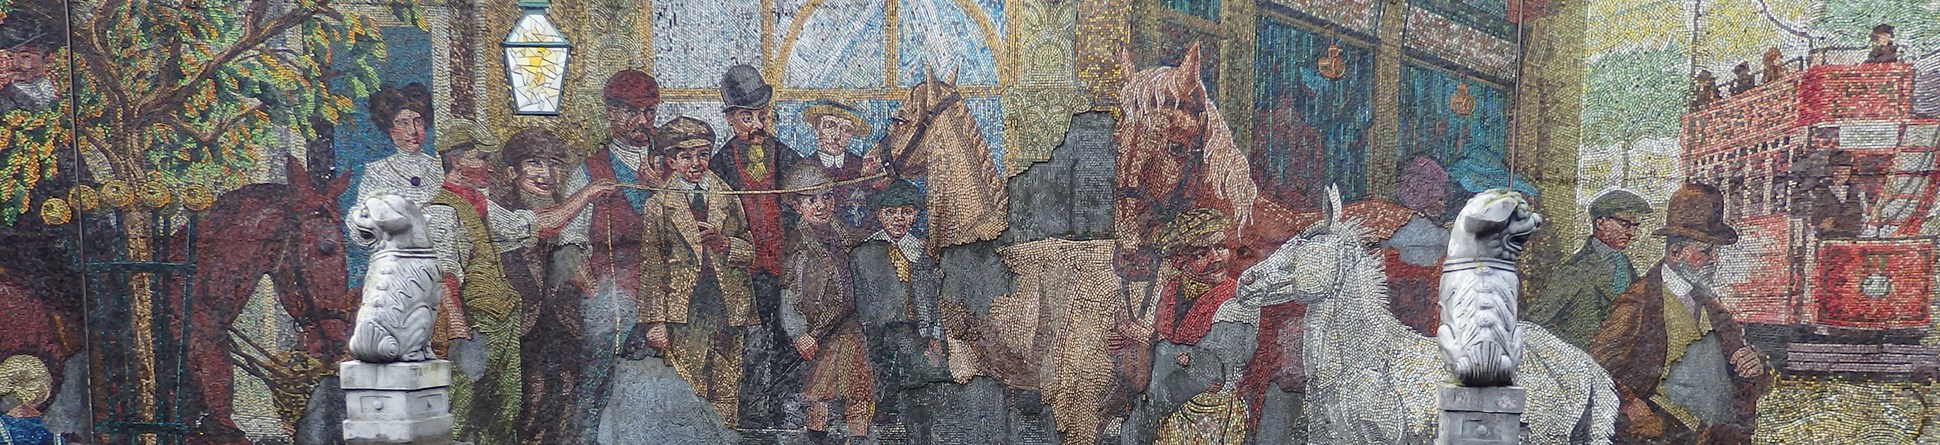 Mosaic depicting a horse fair in Birmingham.